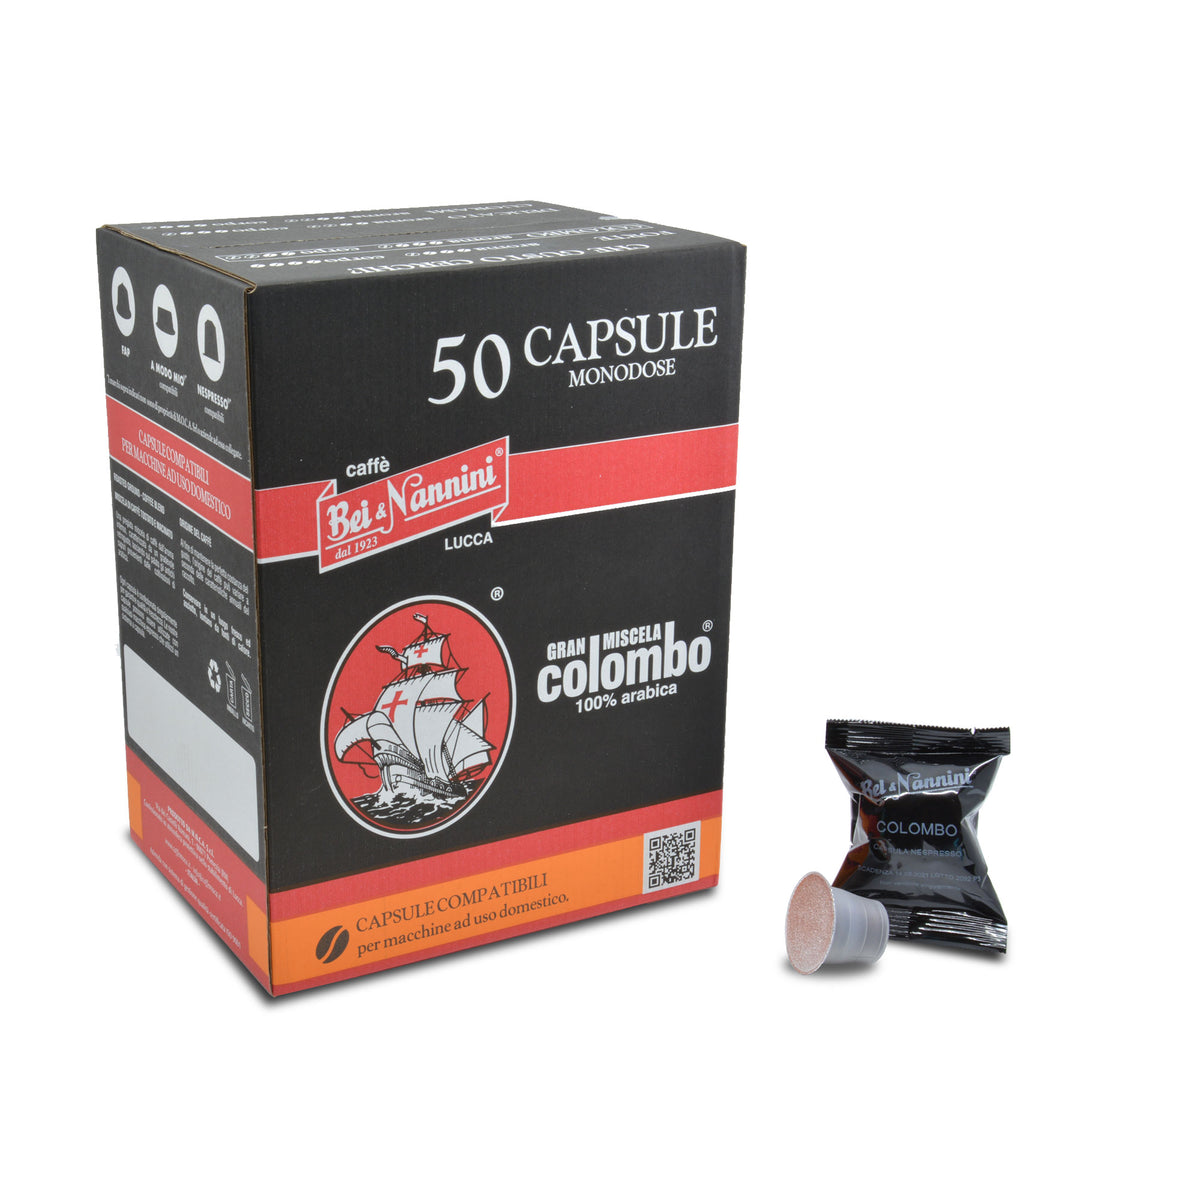 Caffè Gran Miscela Colombo® - Capsule compatibili Nespresso® - scatola – Caffè  Bei & Nannini